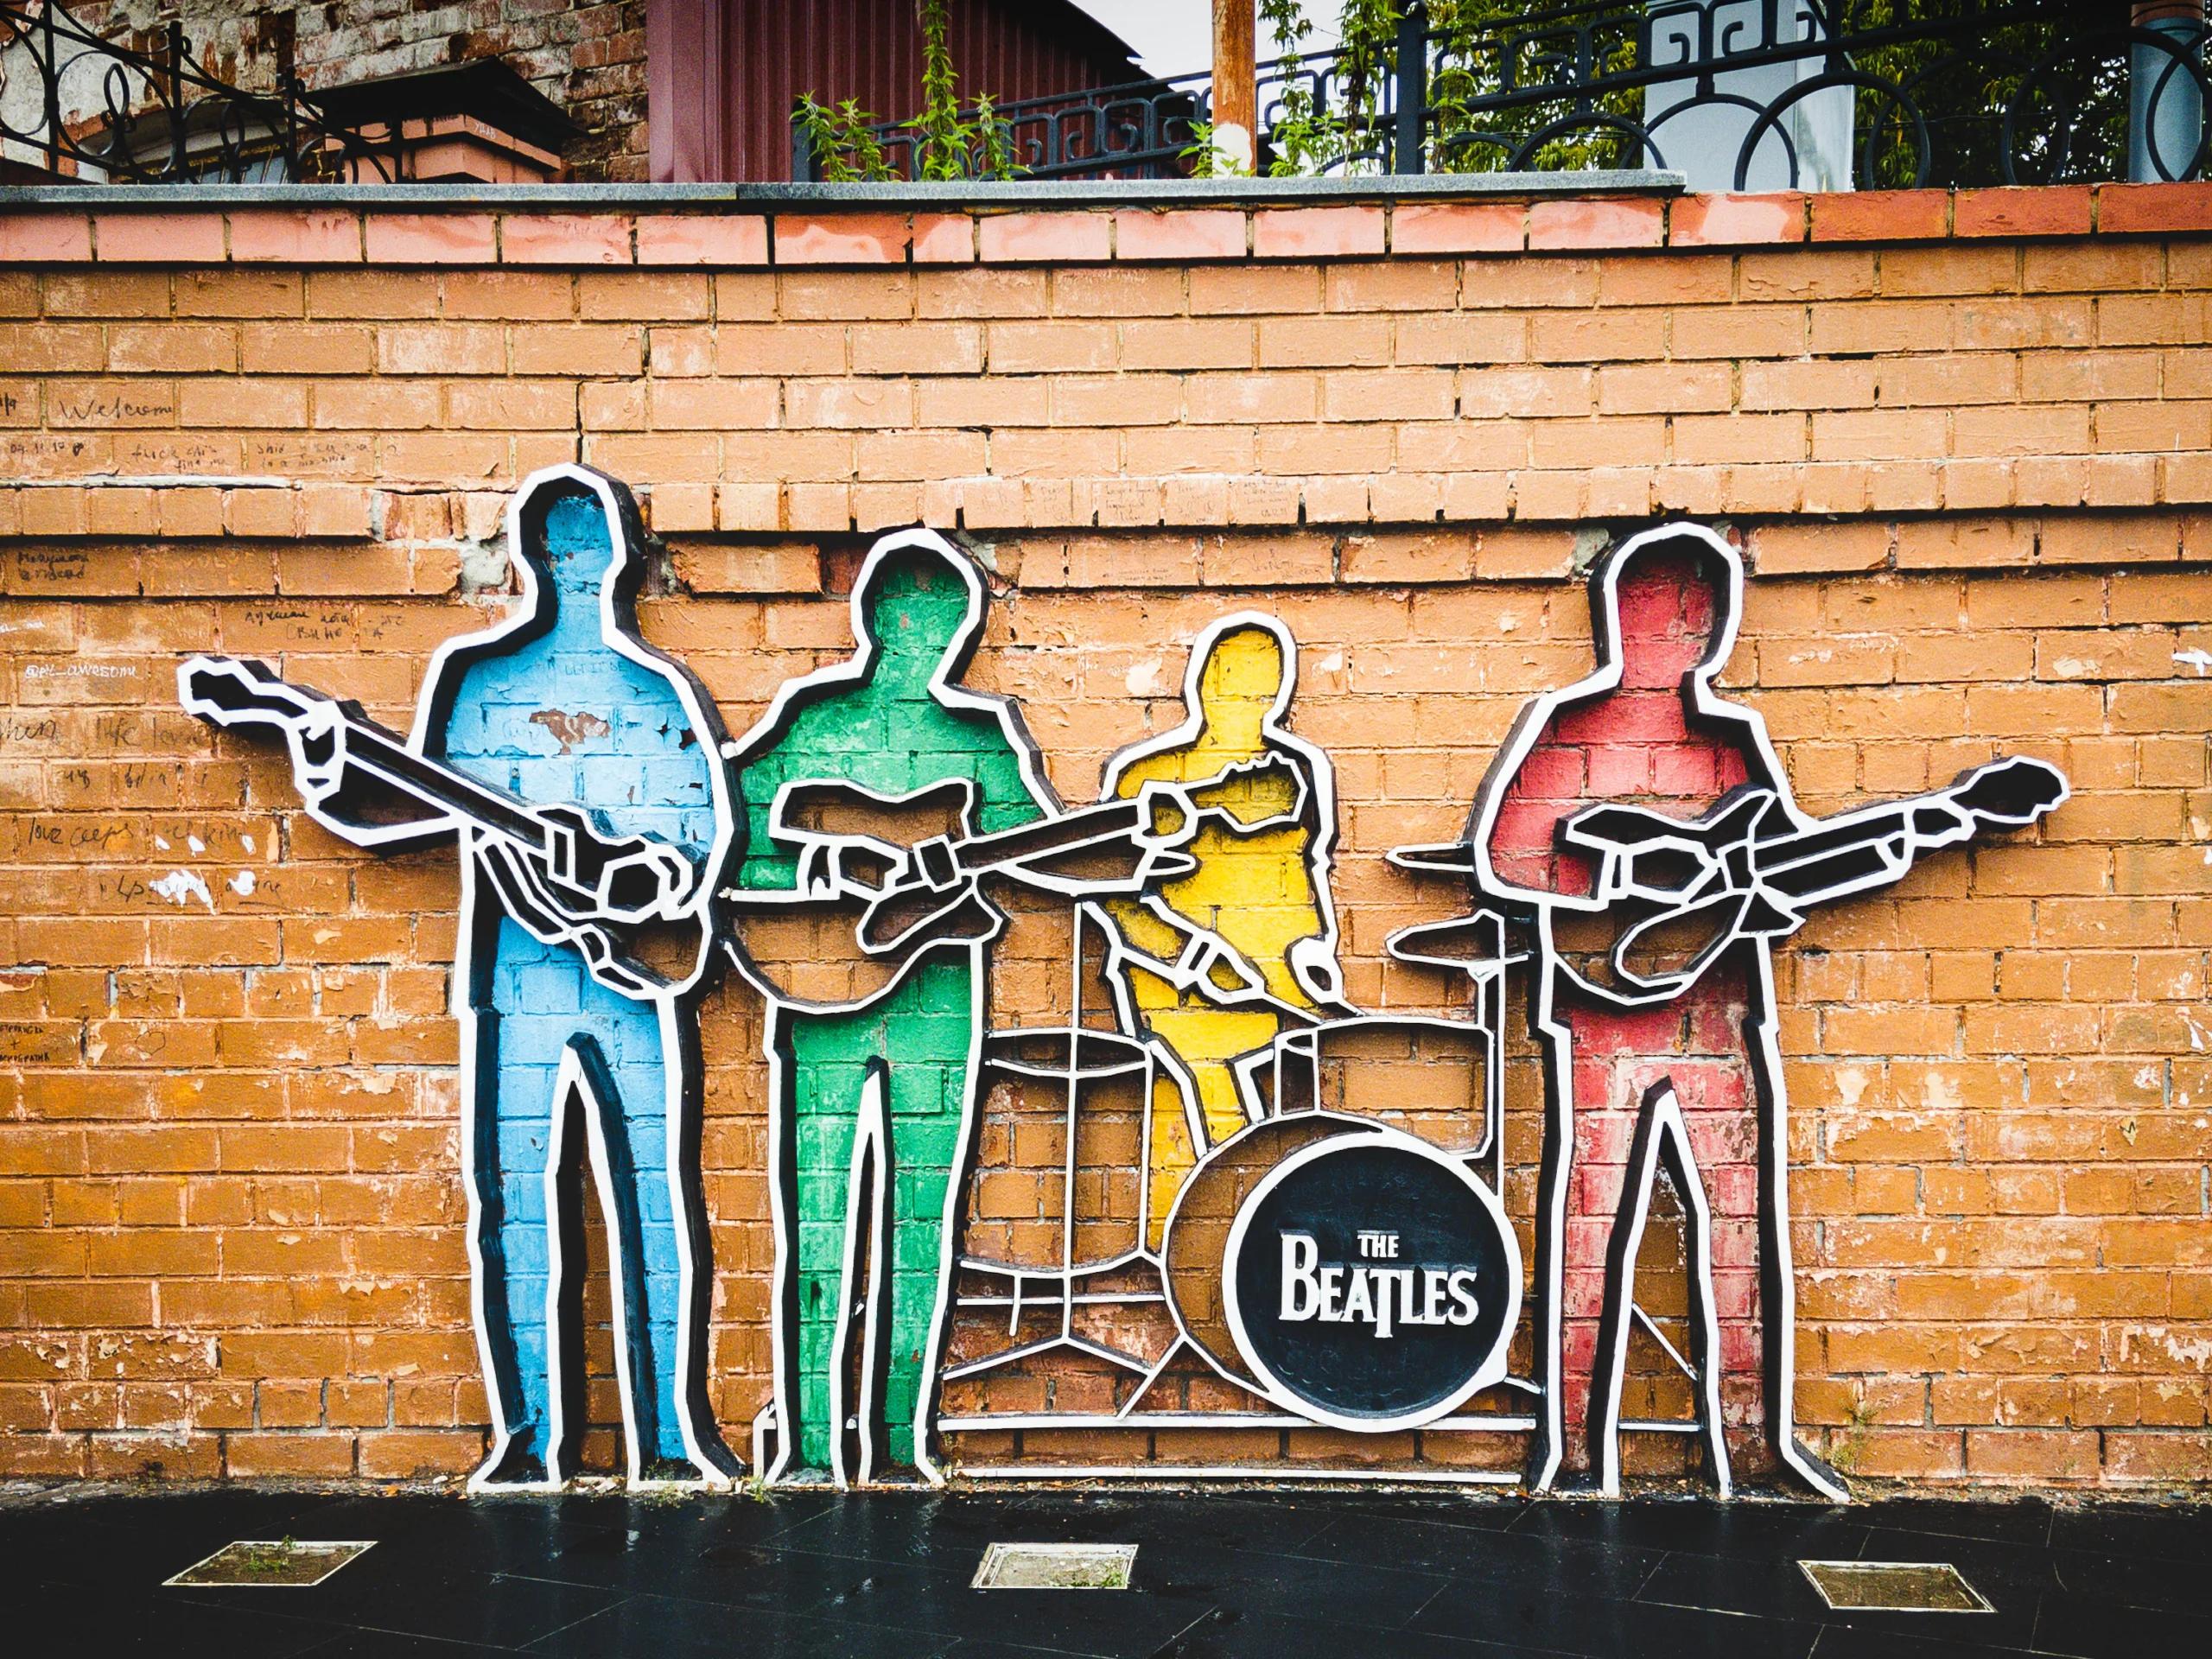 A Beatles artwork on a wall